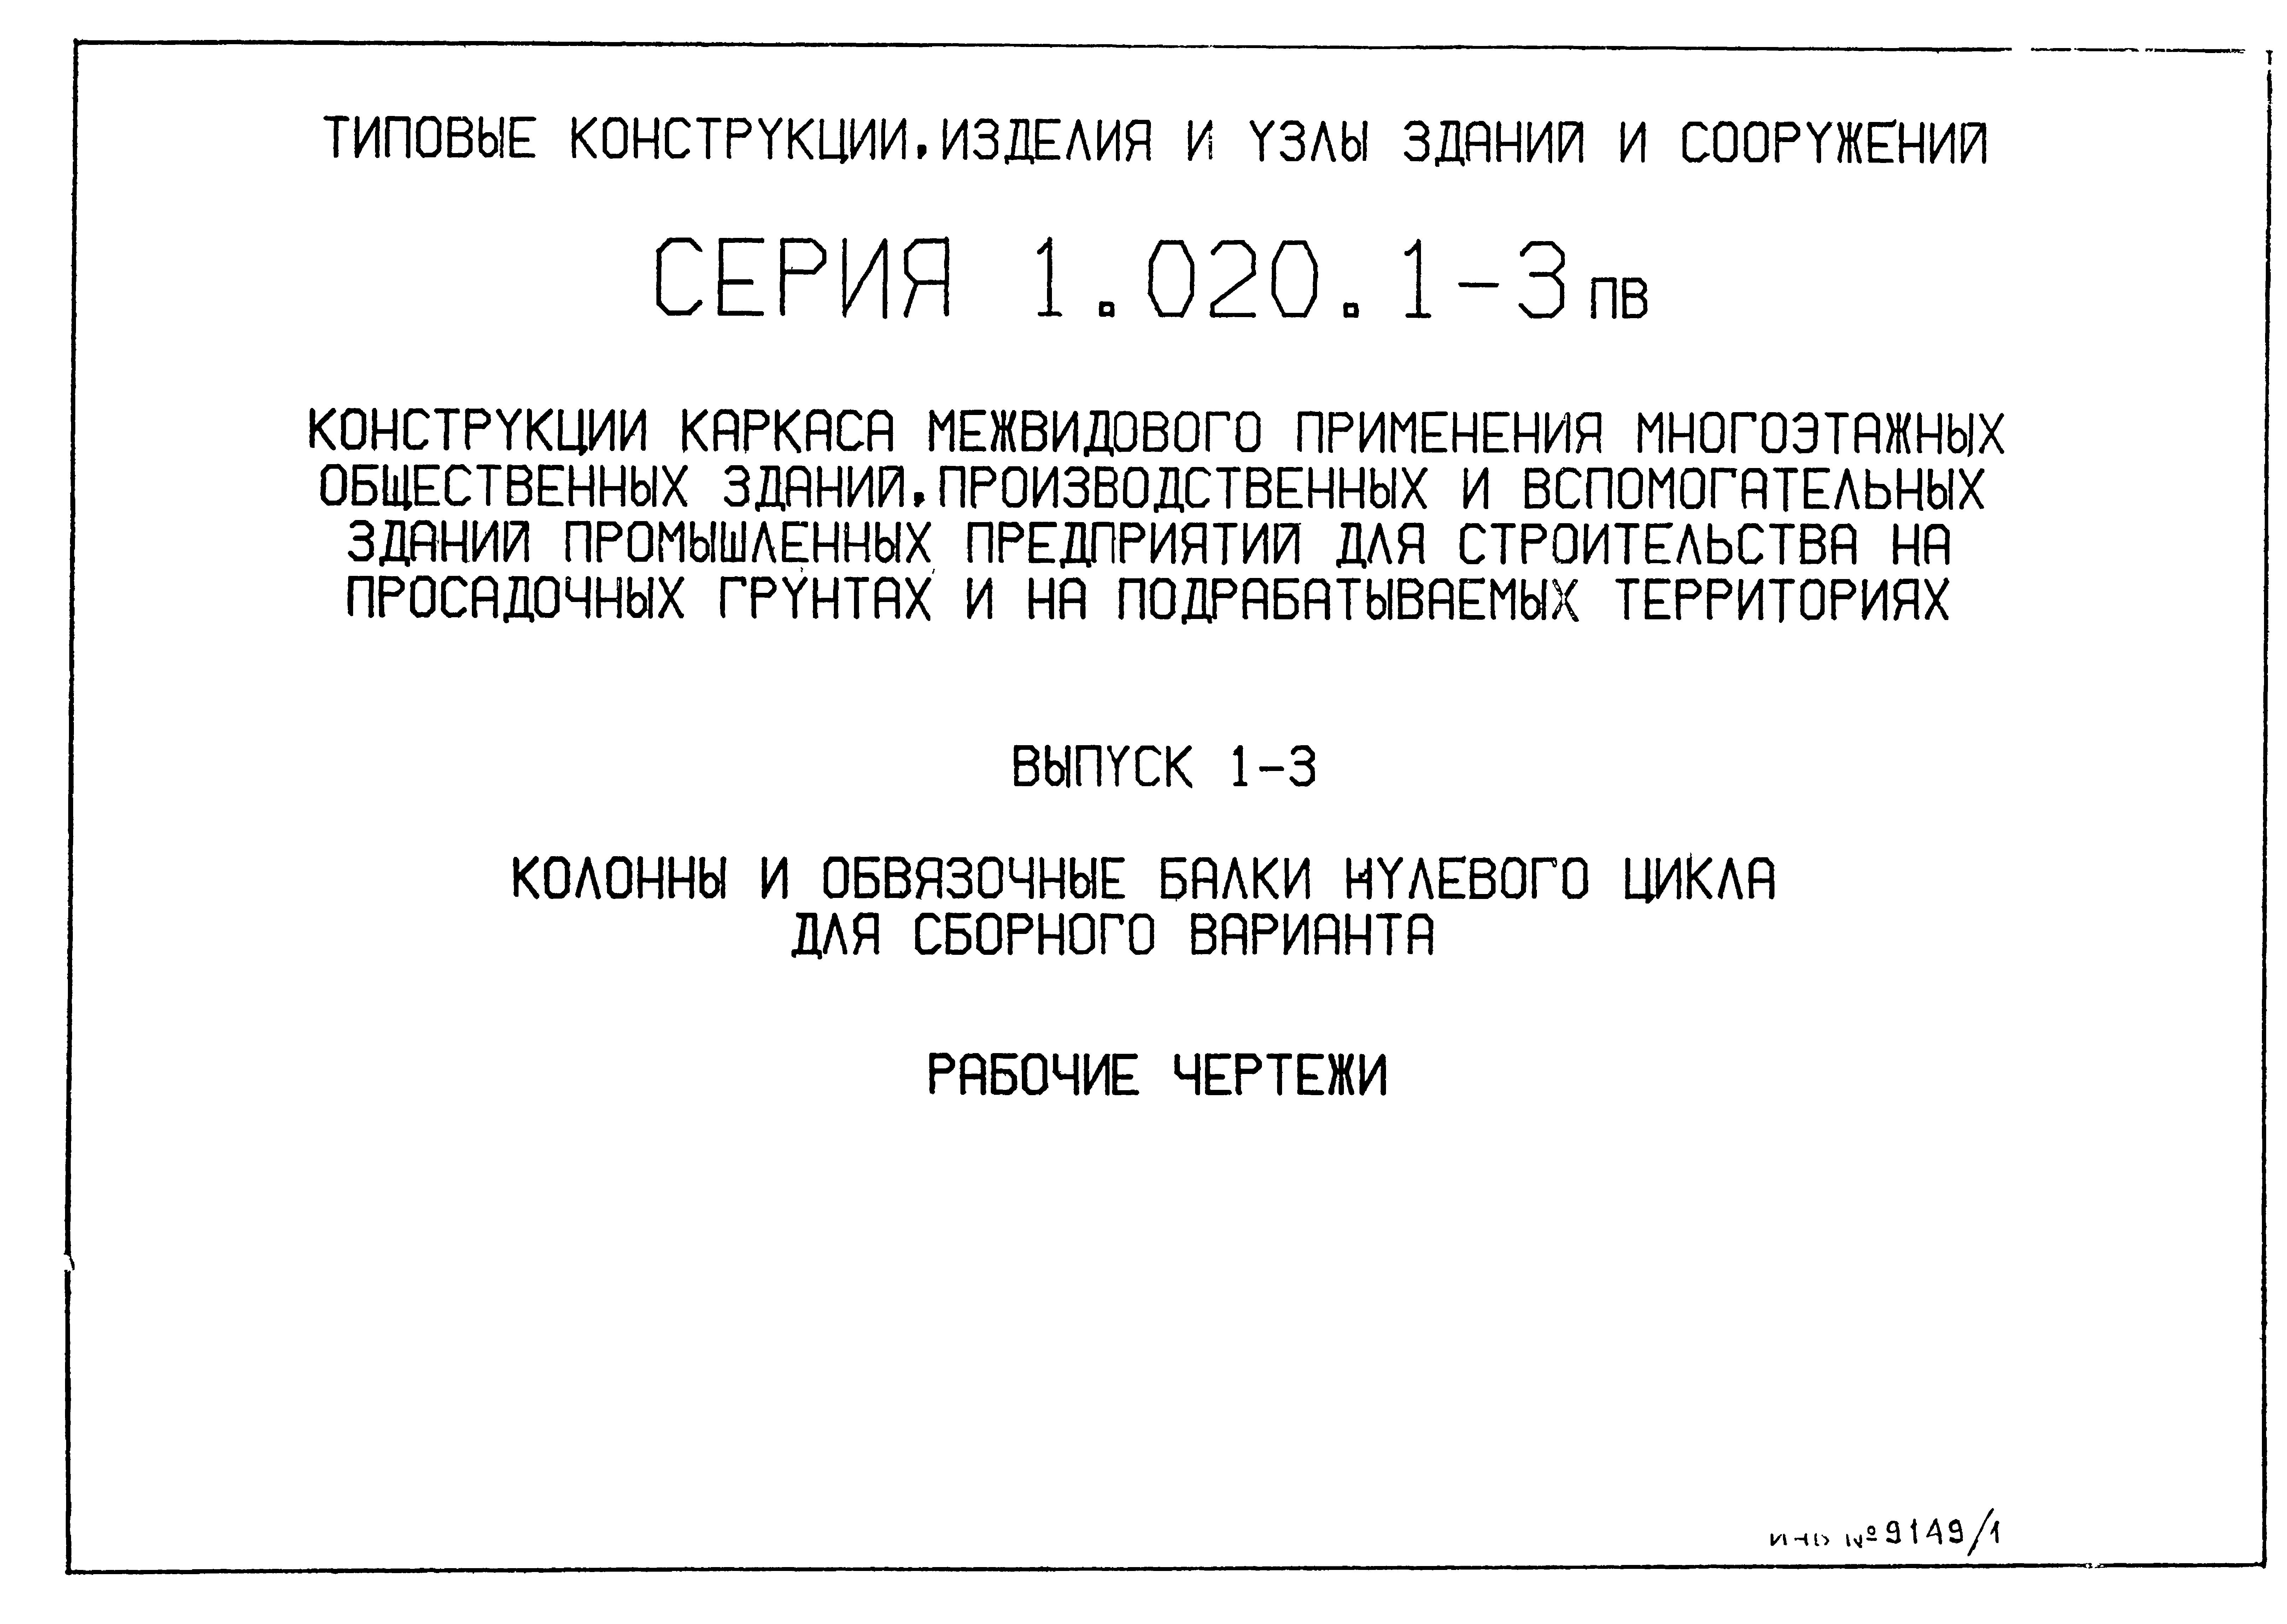 Серия 1.020.1-3пв